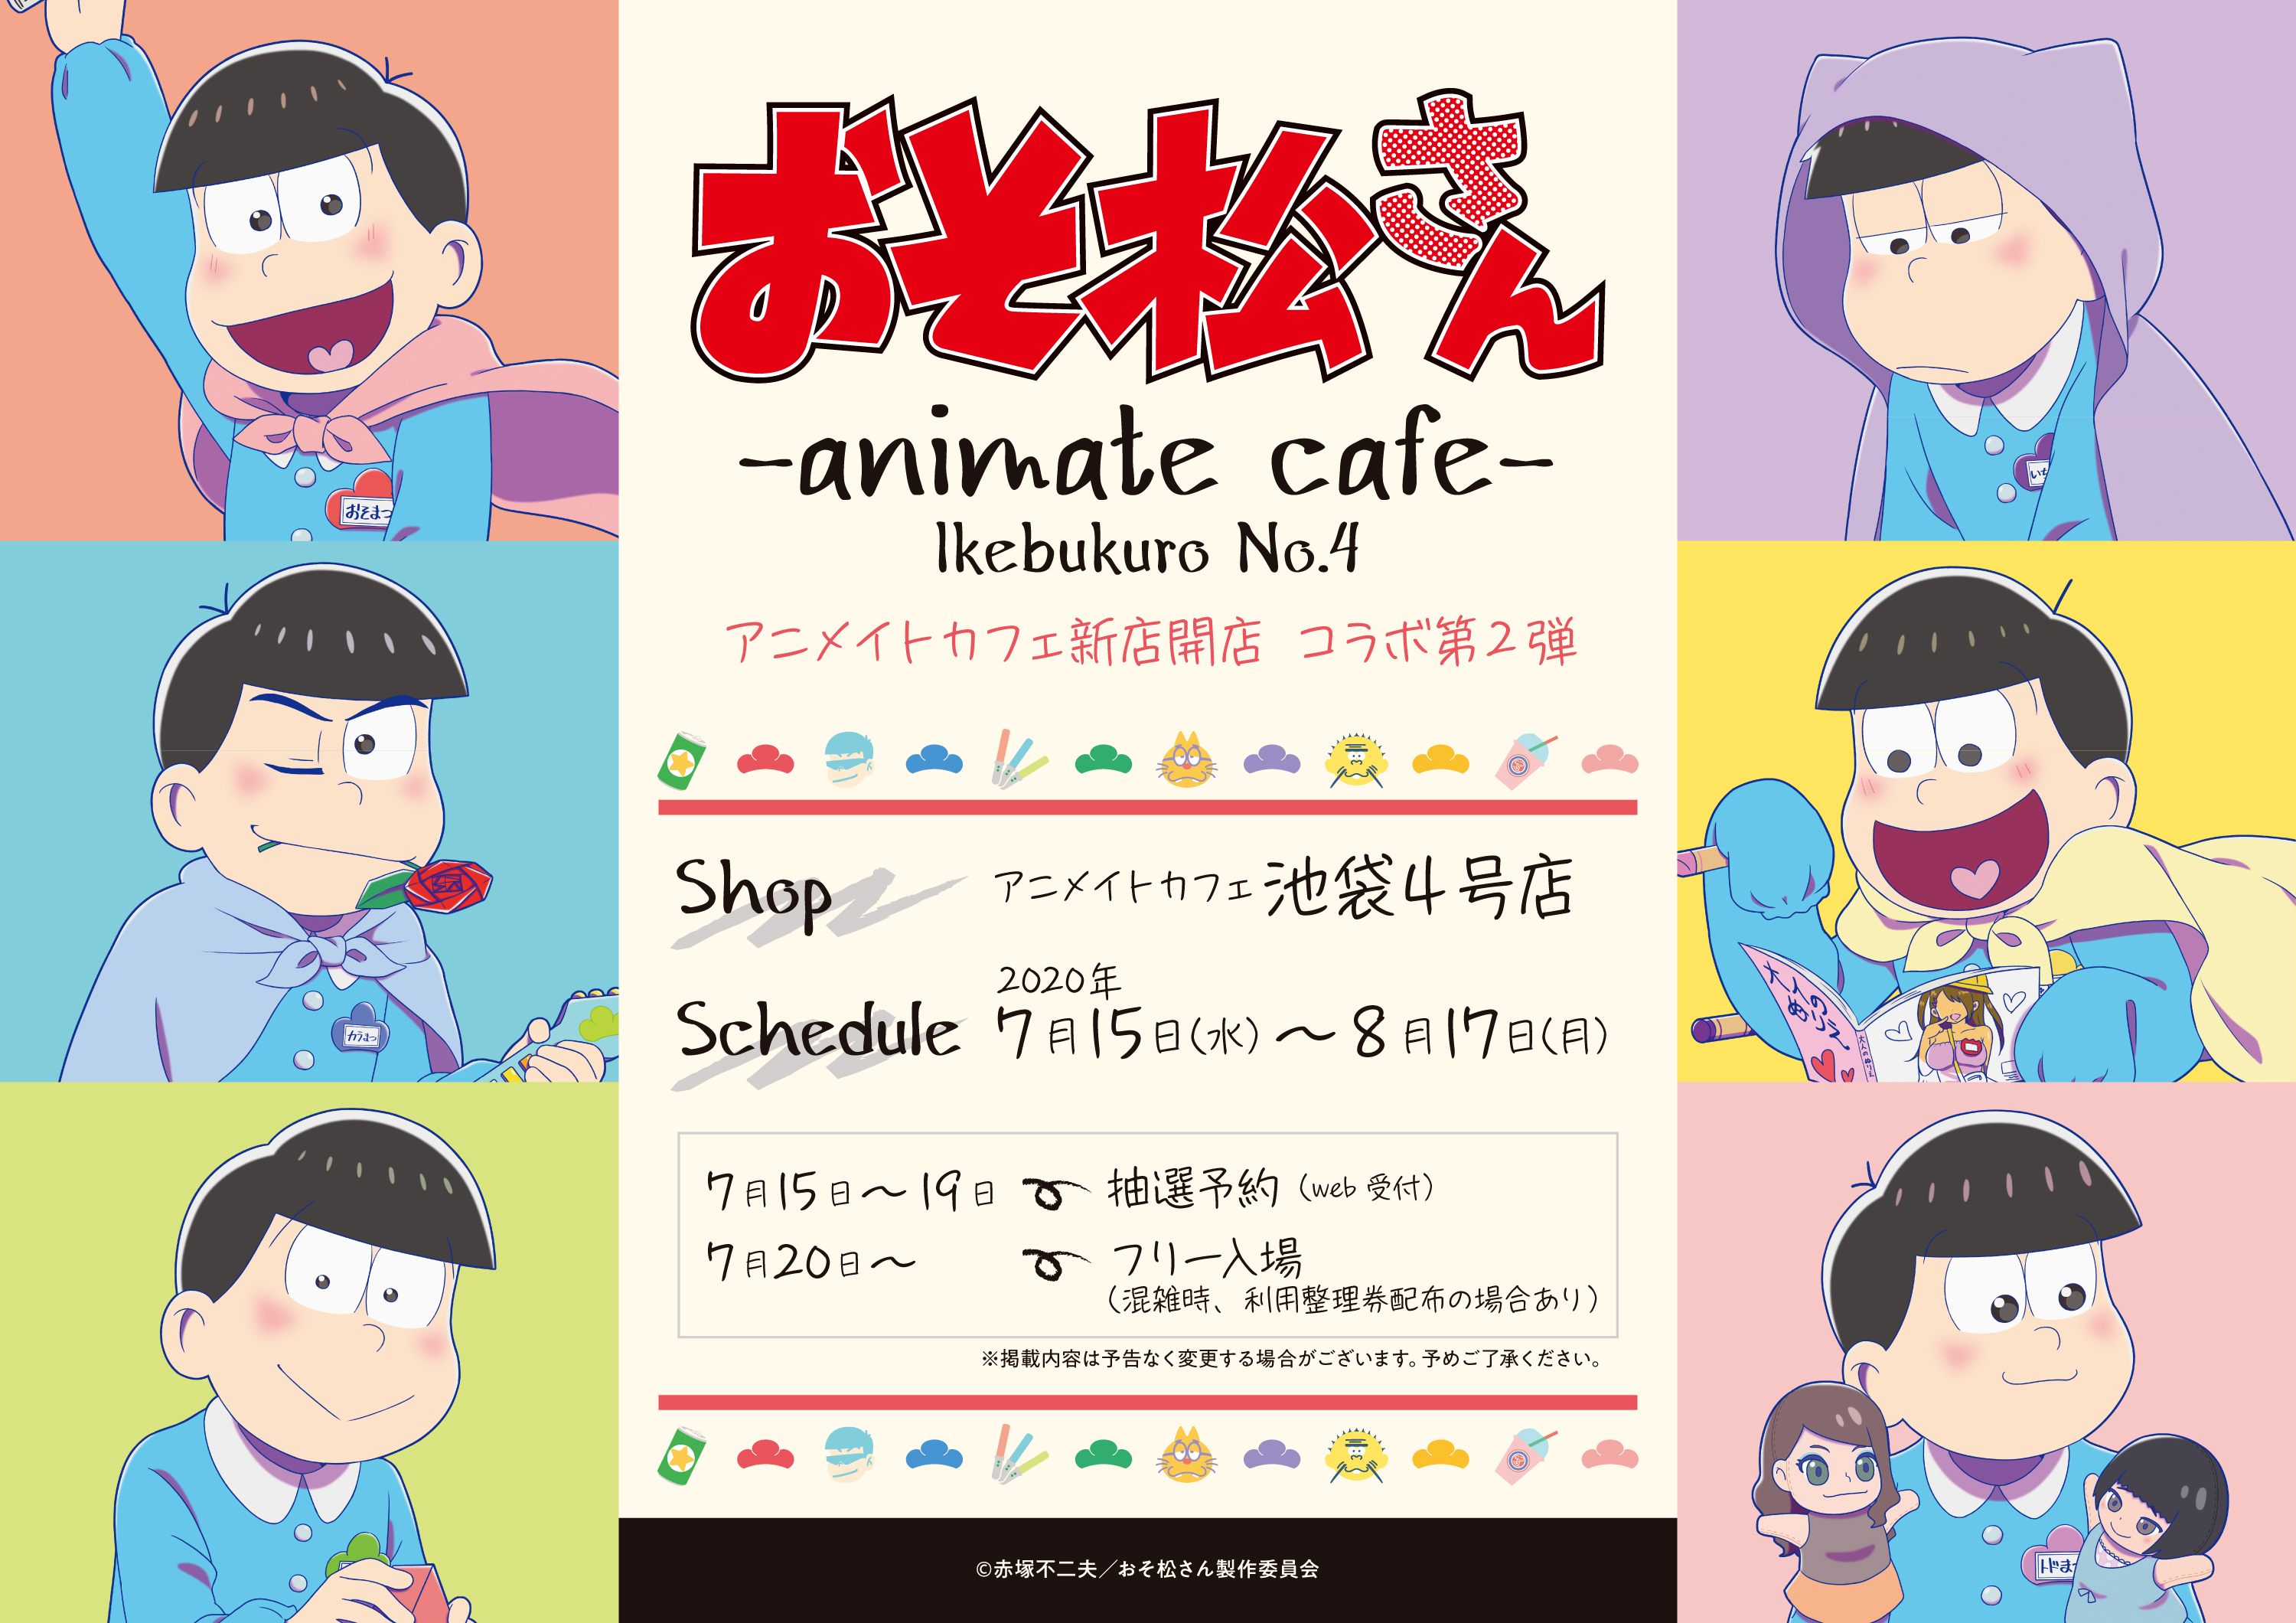 Tvアニメ おそ松さん とアニメイトカフェのコラボレーションカフェ決定 アニメイトカフェ池袋4 号店で7月15日より開催 株式会社アニメイトホールディングスのプレスリリース